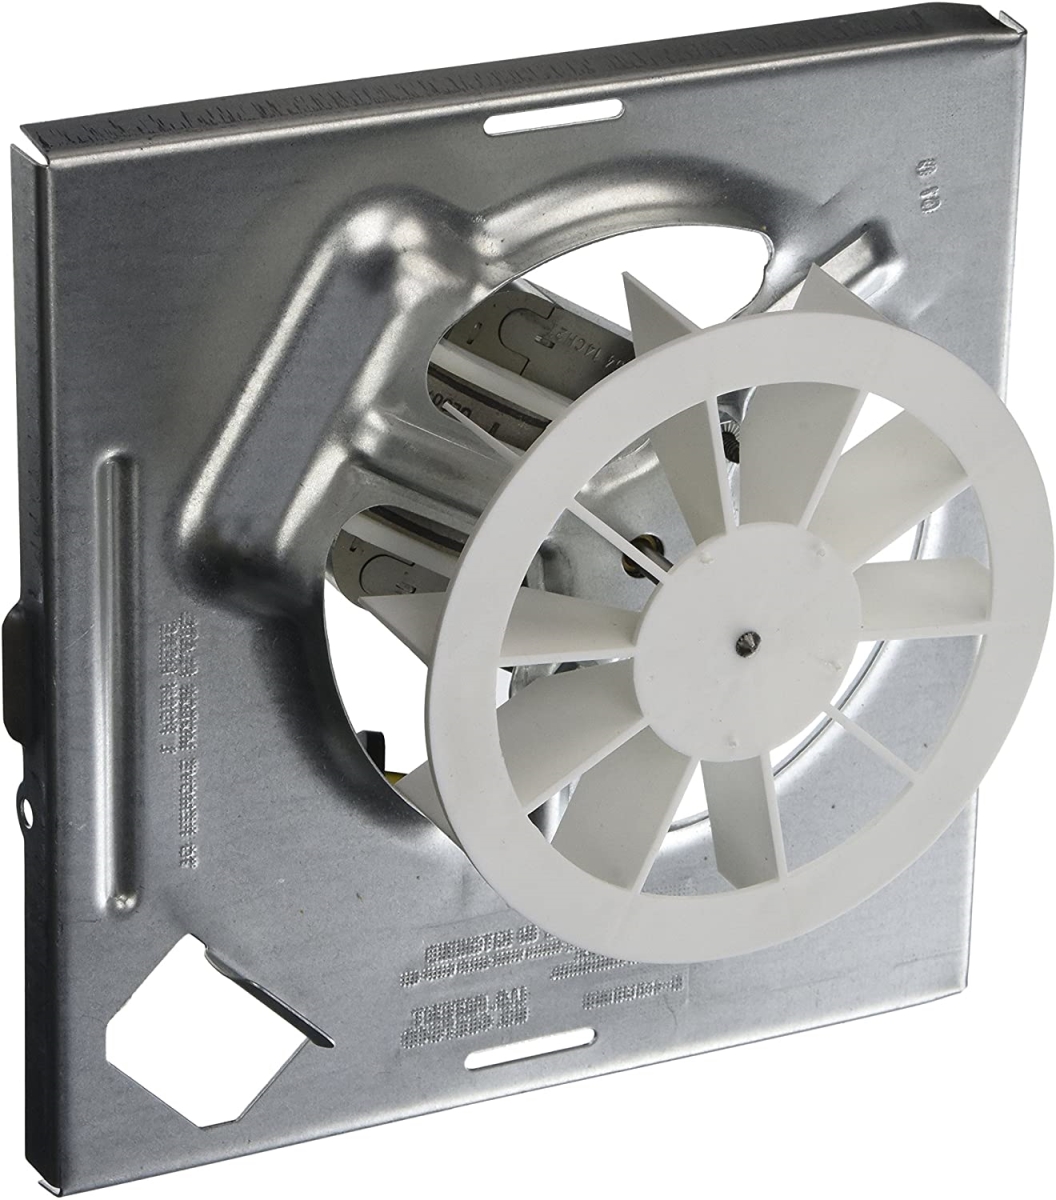 Picture of Broan Nutone S97012026 Fan Assembly for Broan Nutone 688 Ventilation Fan, Silver